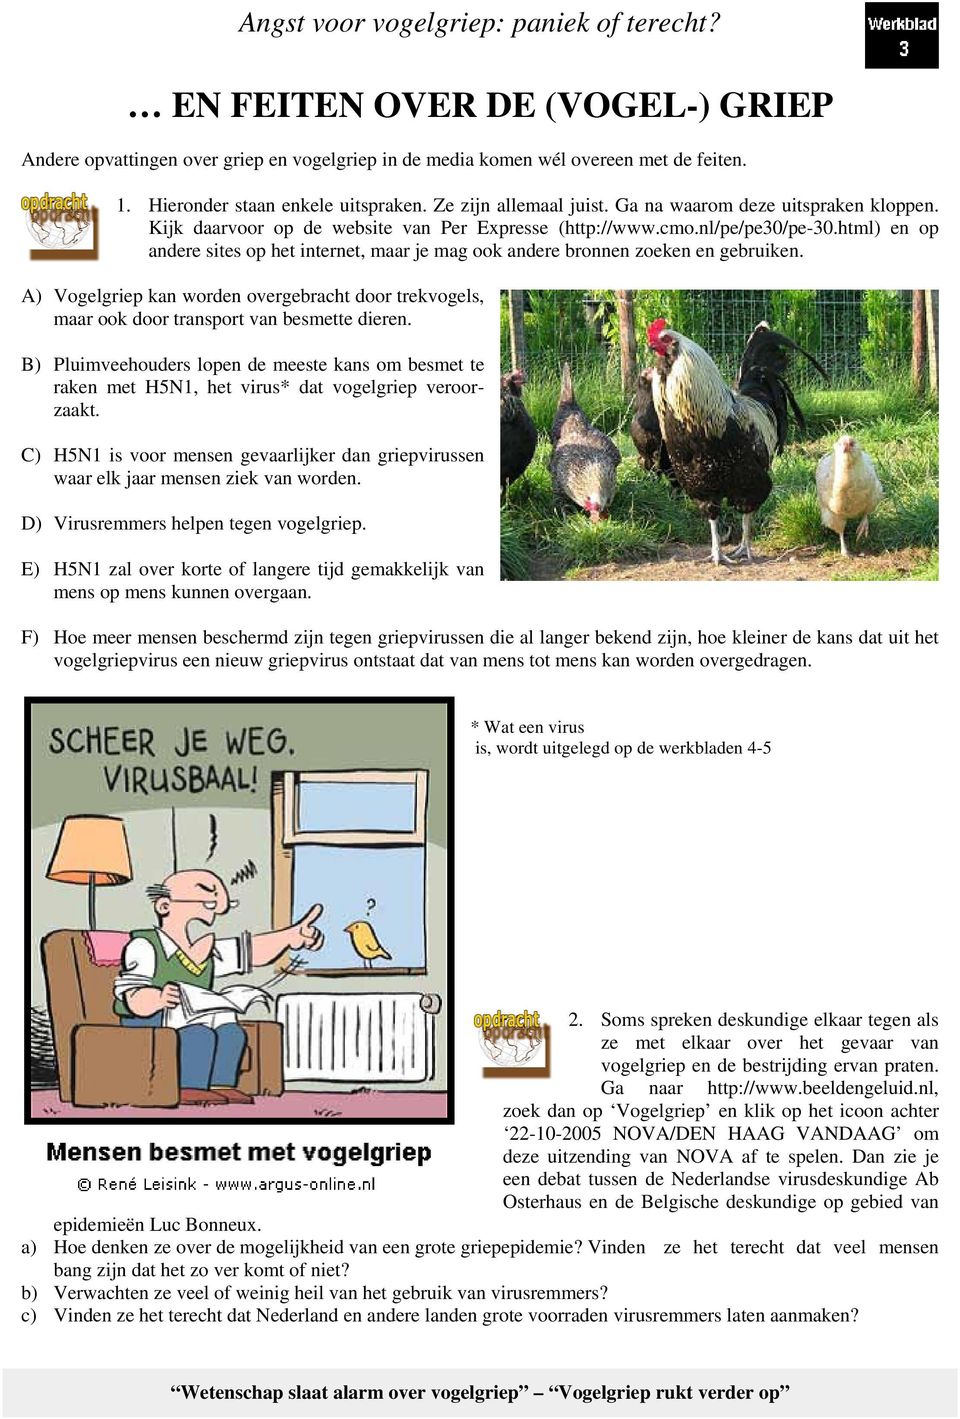 html) en op andere sites op het internet, maar je mag ook andere bronnen zoeken en gebruiken. A) Vogelgriep kan worden overgebracht door trekvogels, maar ook door transport van besmette dieren.